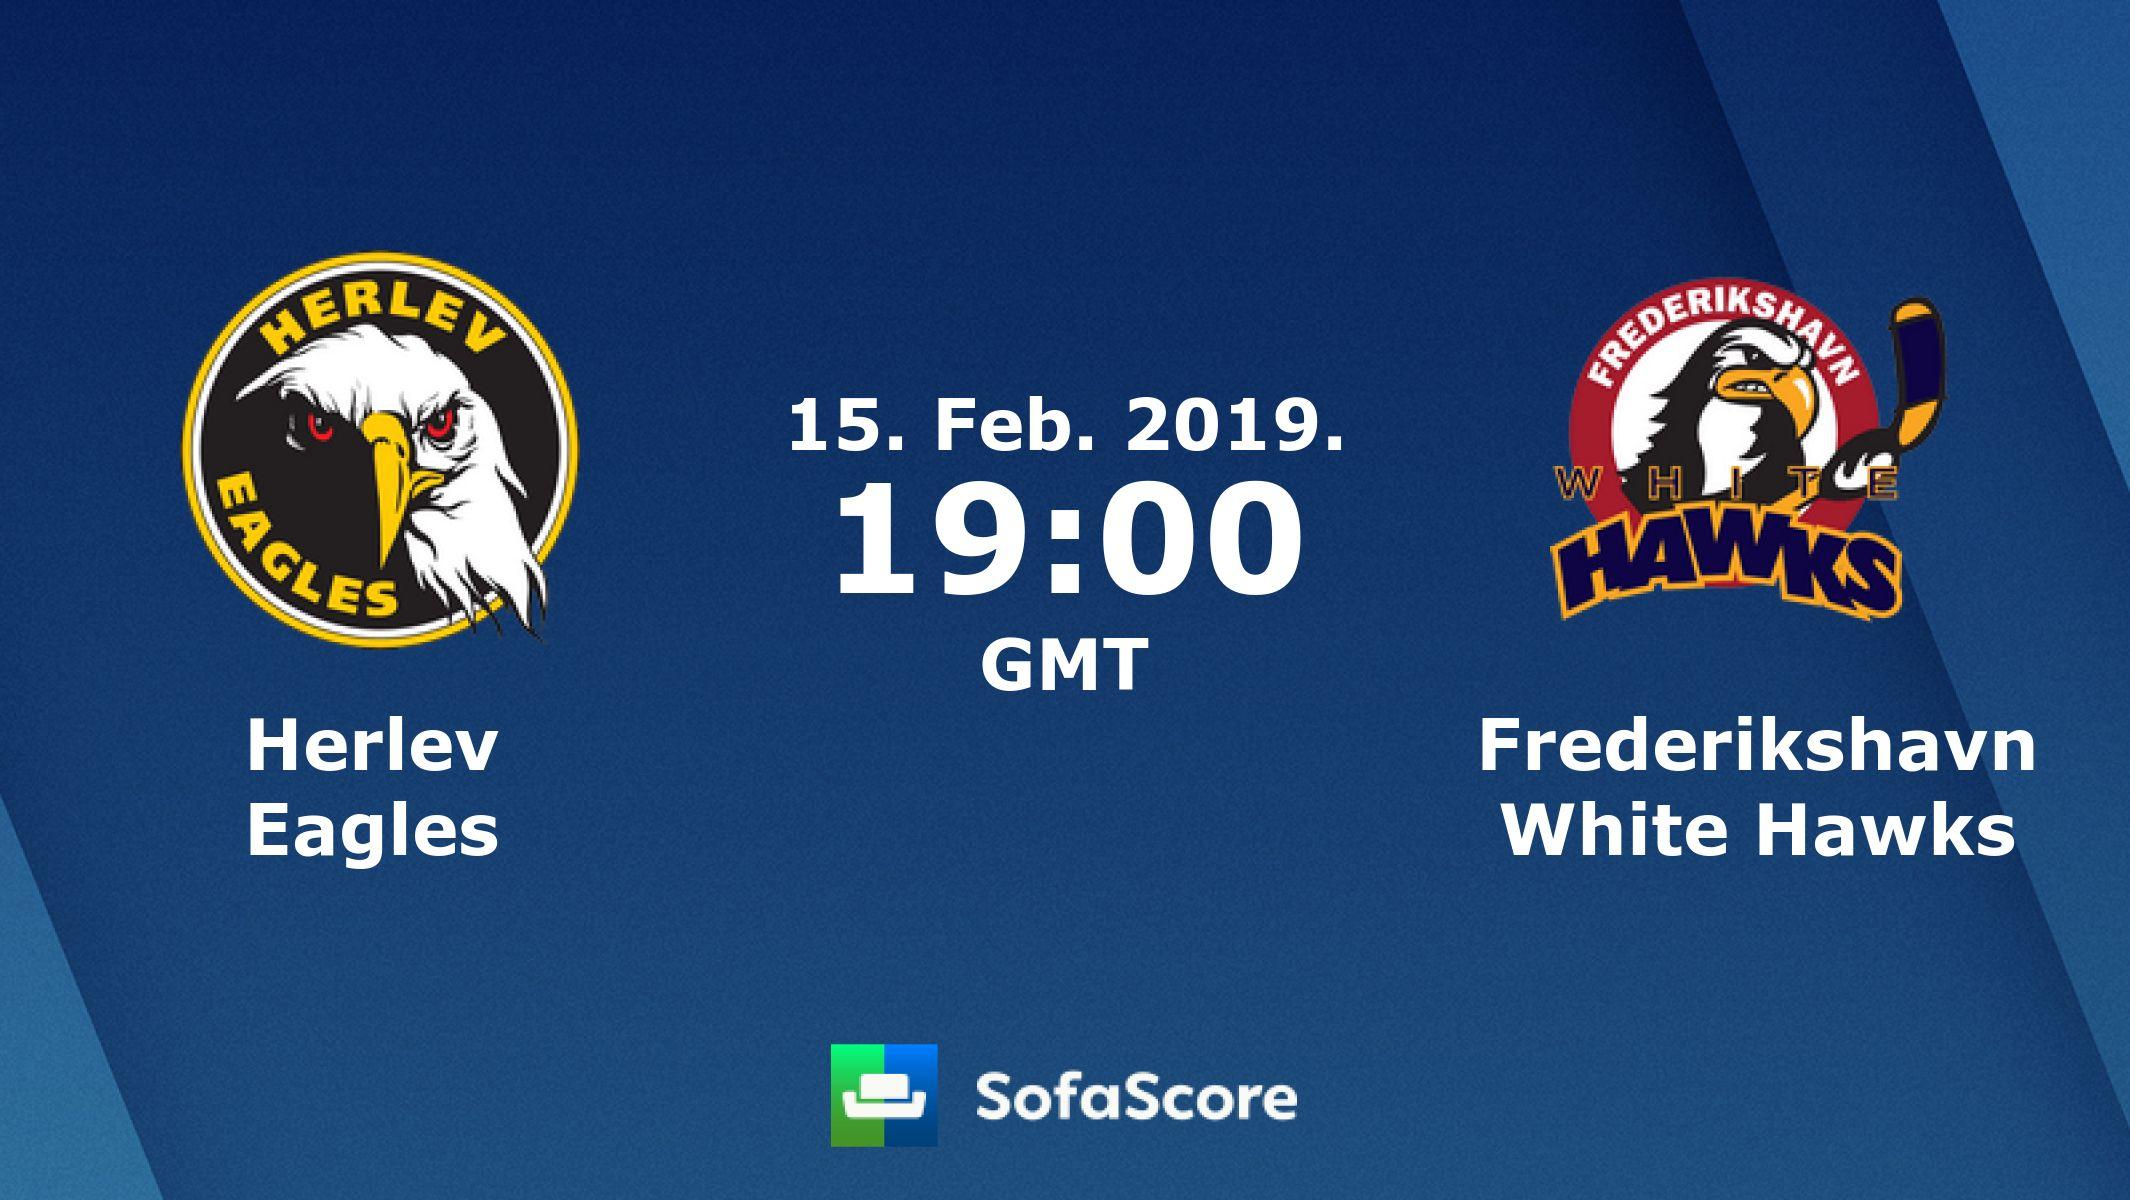 White Hawks Logo - Herlev Eagles Frederikshavn White Hawks live score, video stream